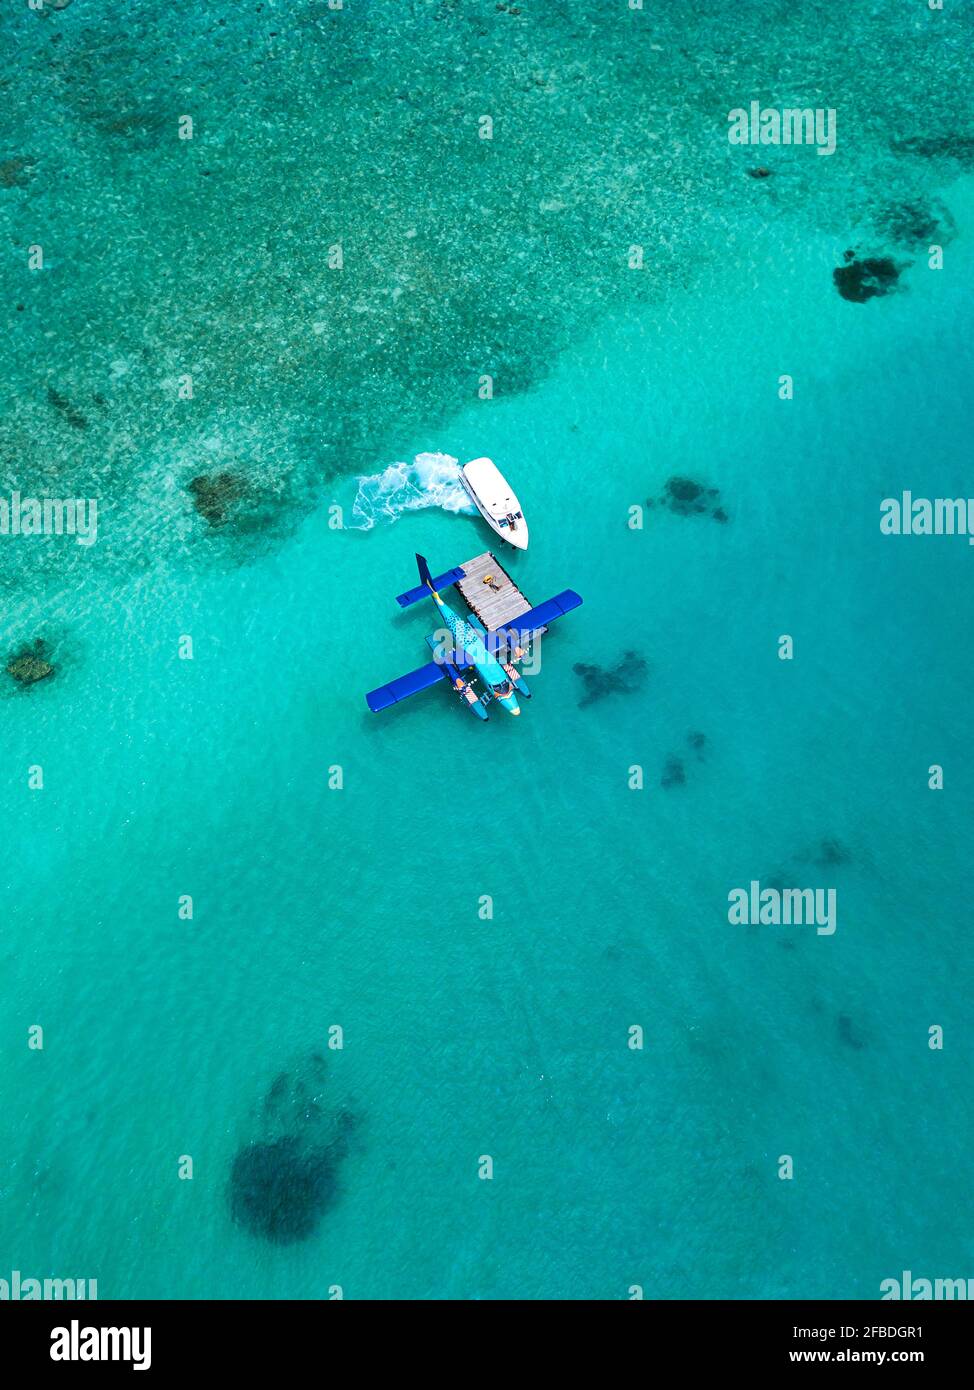 Vue aérienne du bateau à moteur approchant de l'hydravion flottant dans l'eau turquoise De l'atoll masculin Banque D'Images